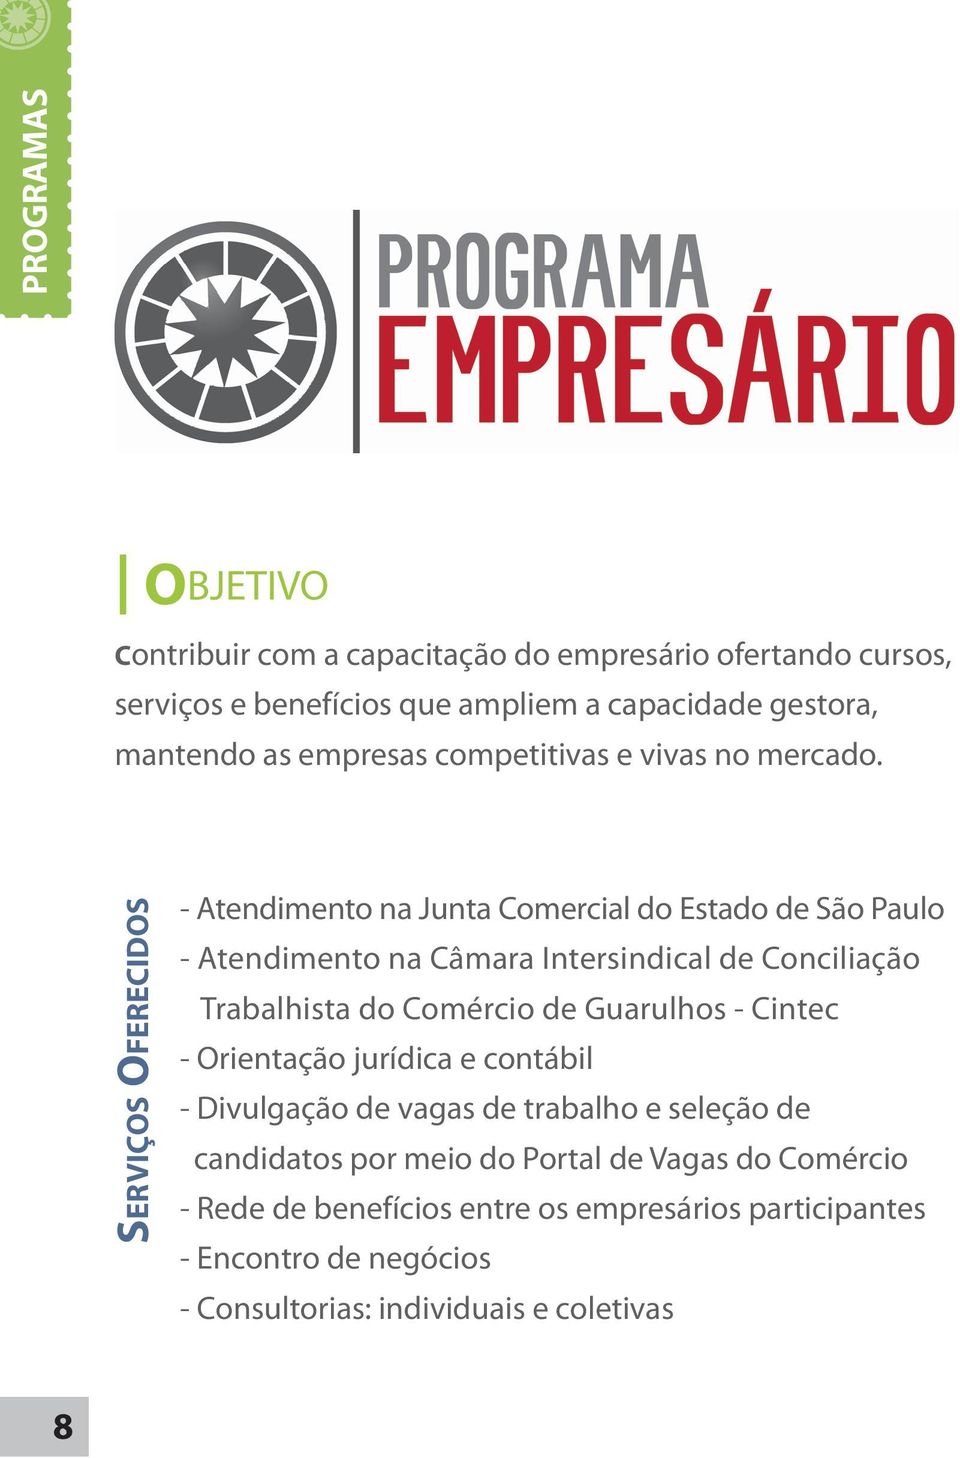 SERVIÇOS OFERECIDOS - Atendimento na Junta Comercial do Estado de São Paulo - Atendimento na Câmara Intersindical de Conciliação Trabalhista do Comércio